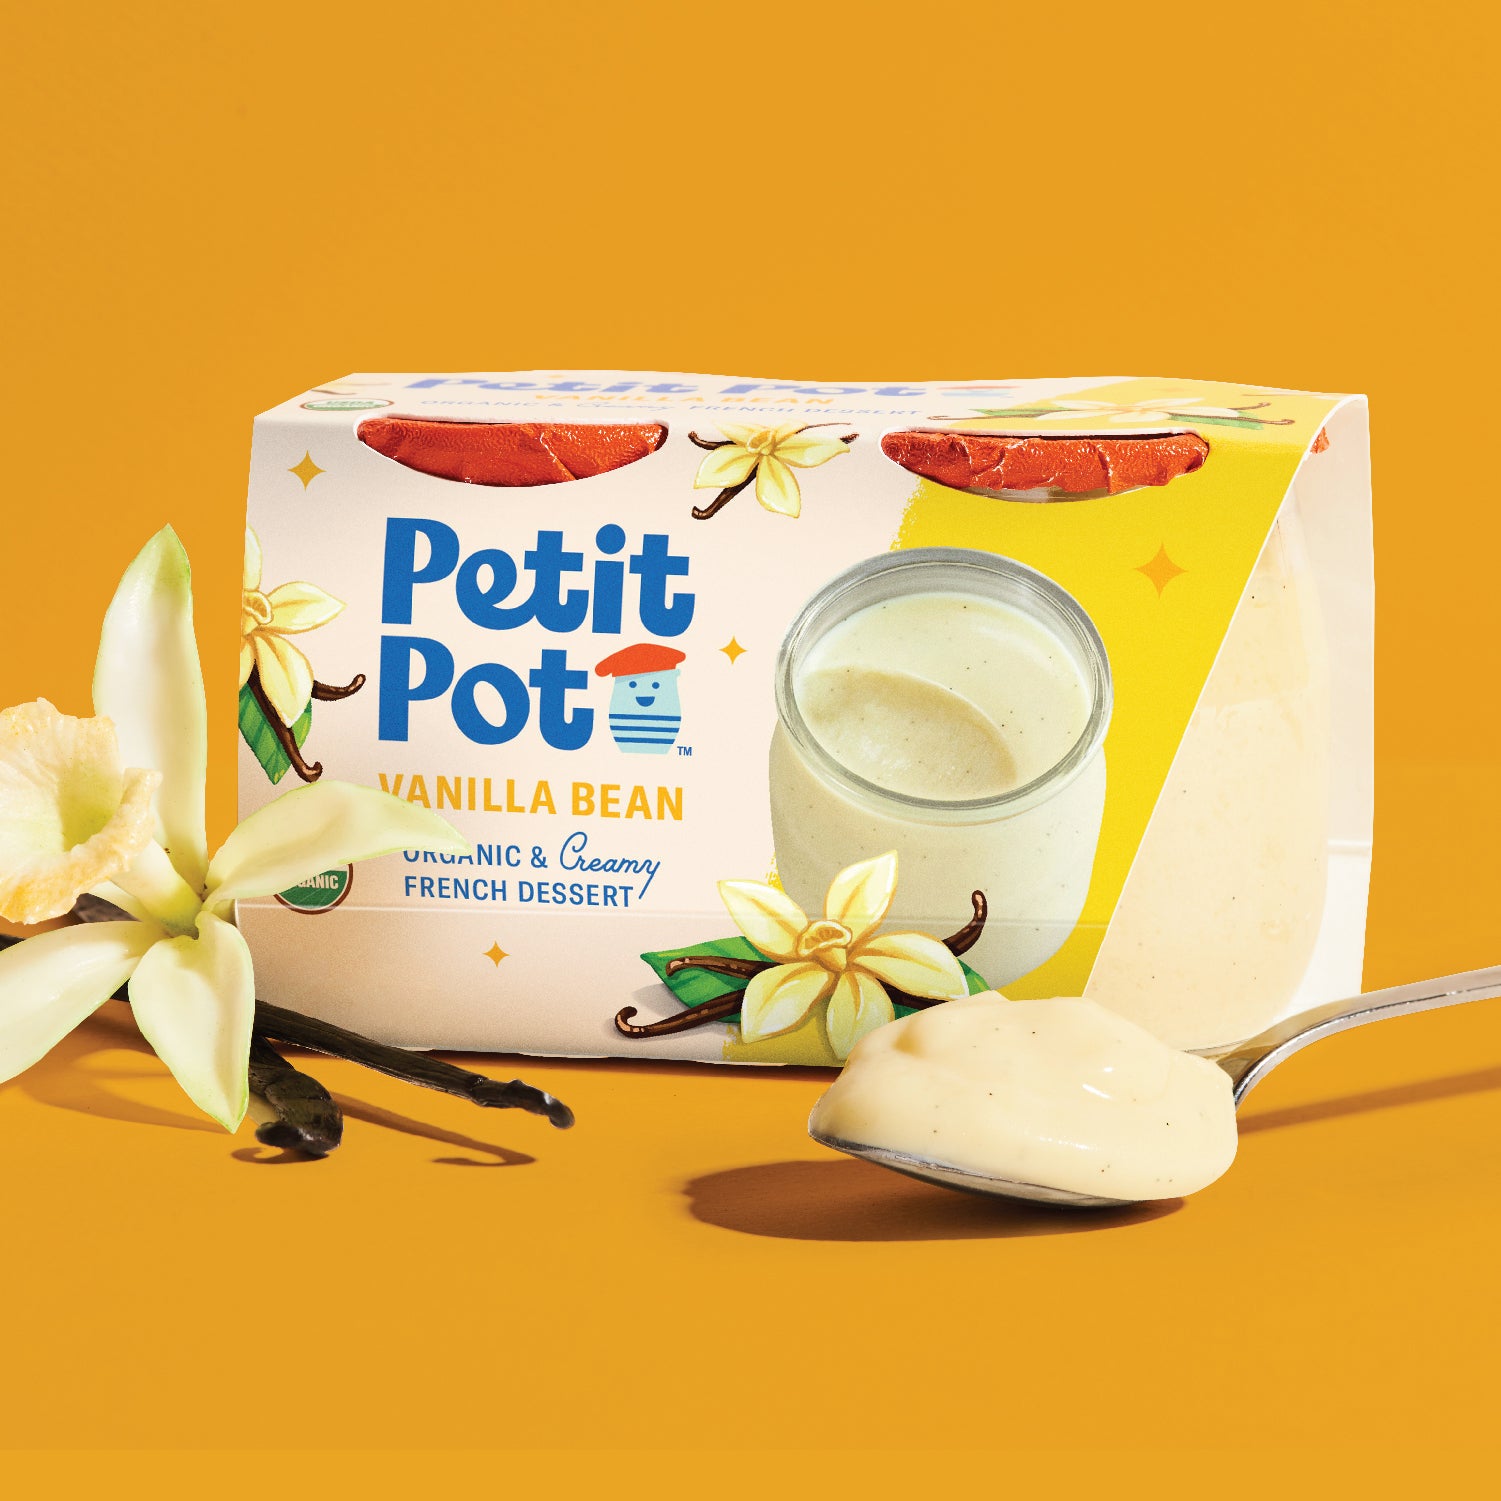 Le Petit Pot de Crème, Saveur Vanille (4 Pots) - La Laitière - 400